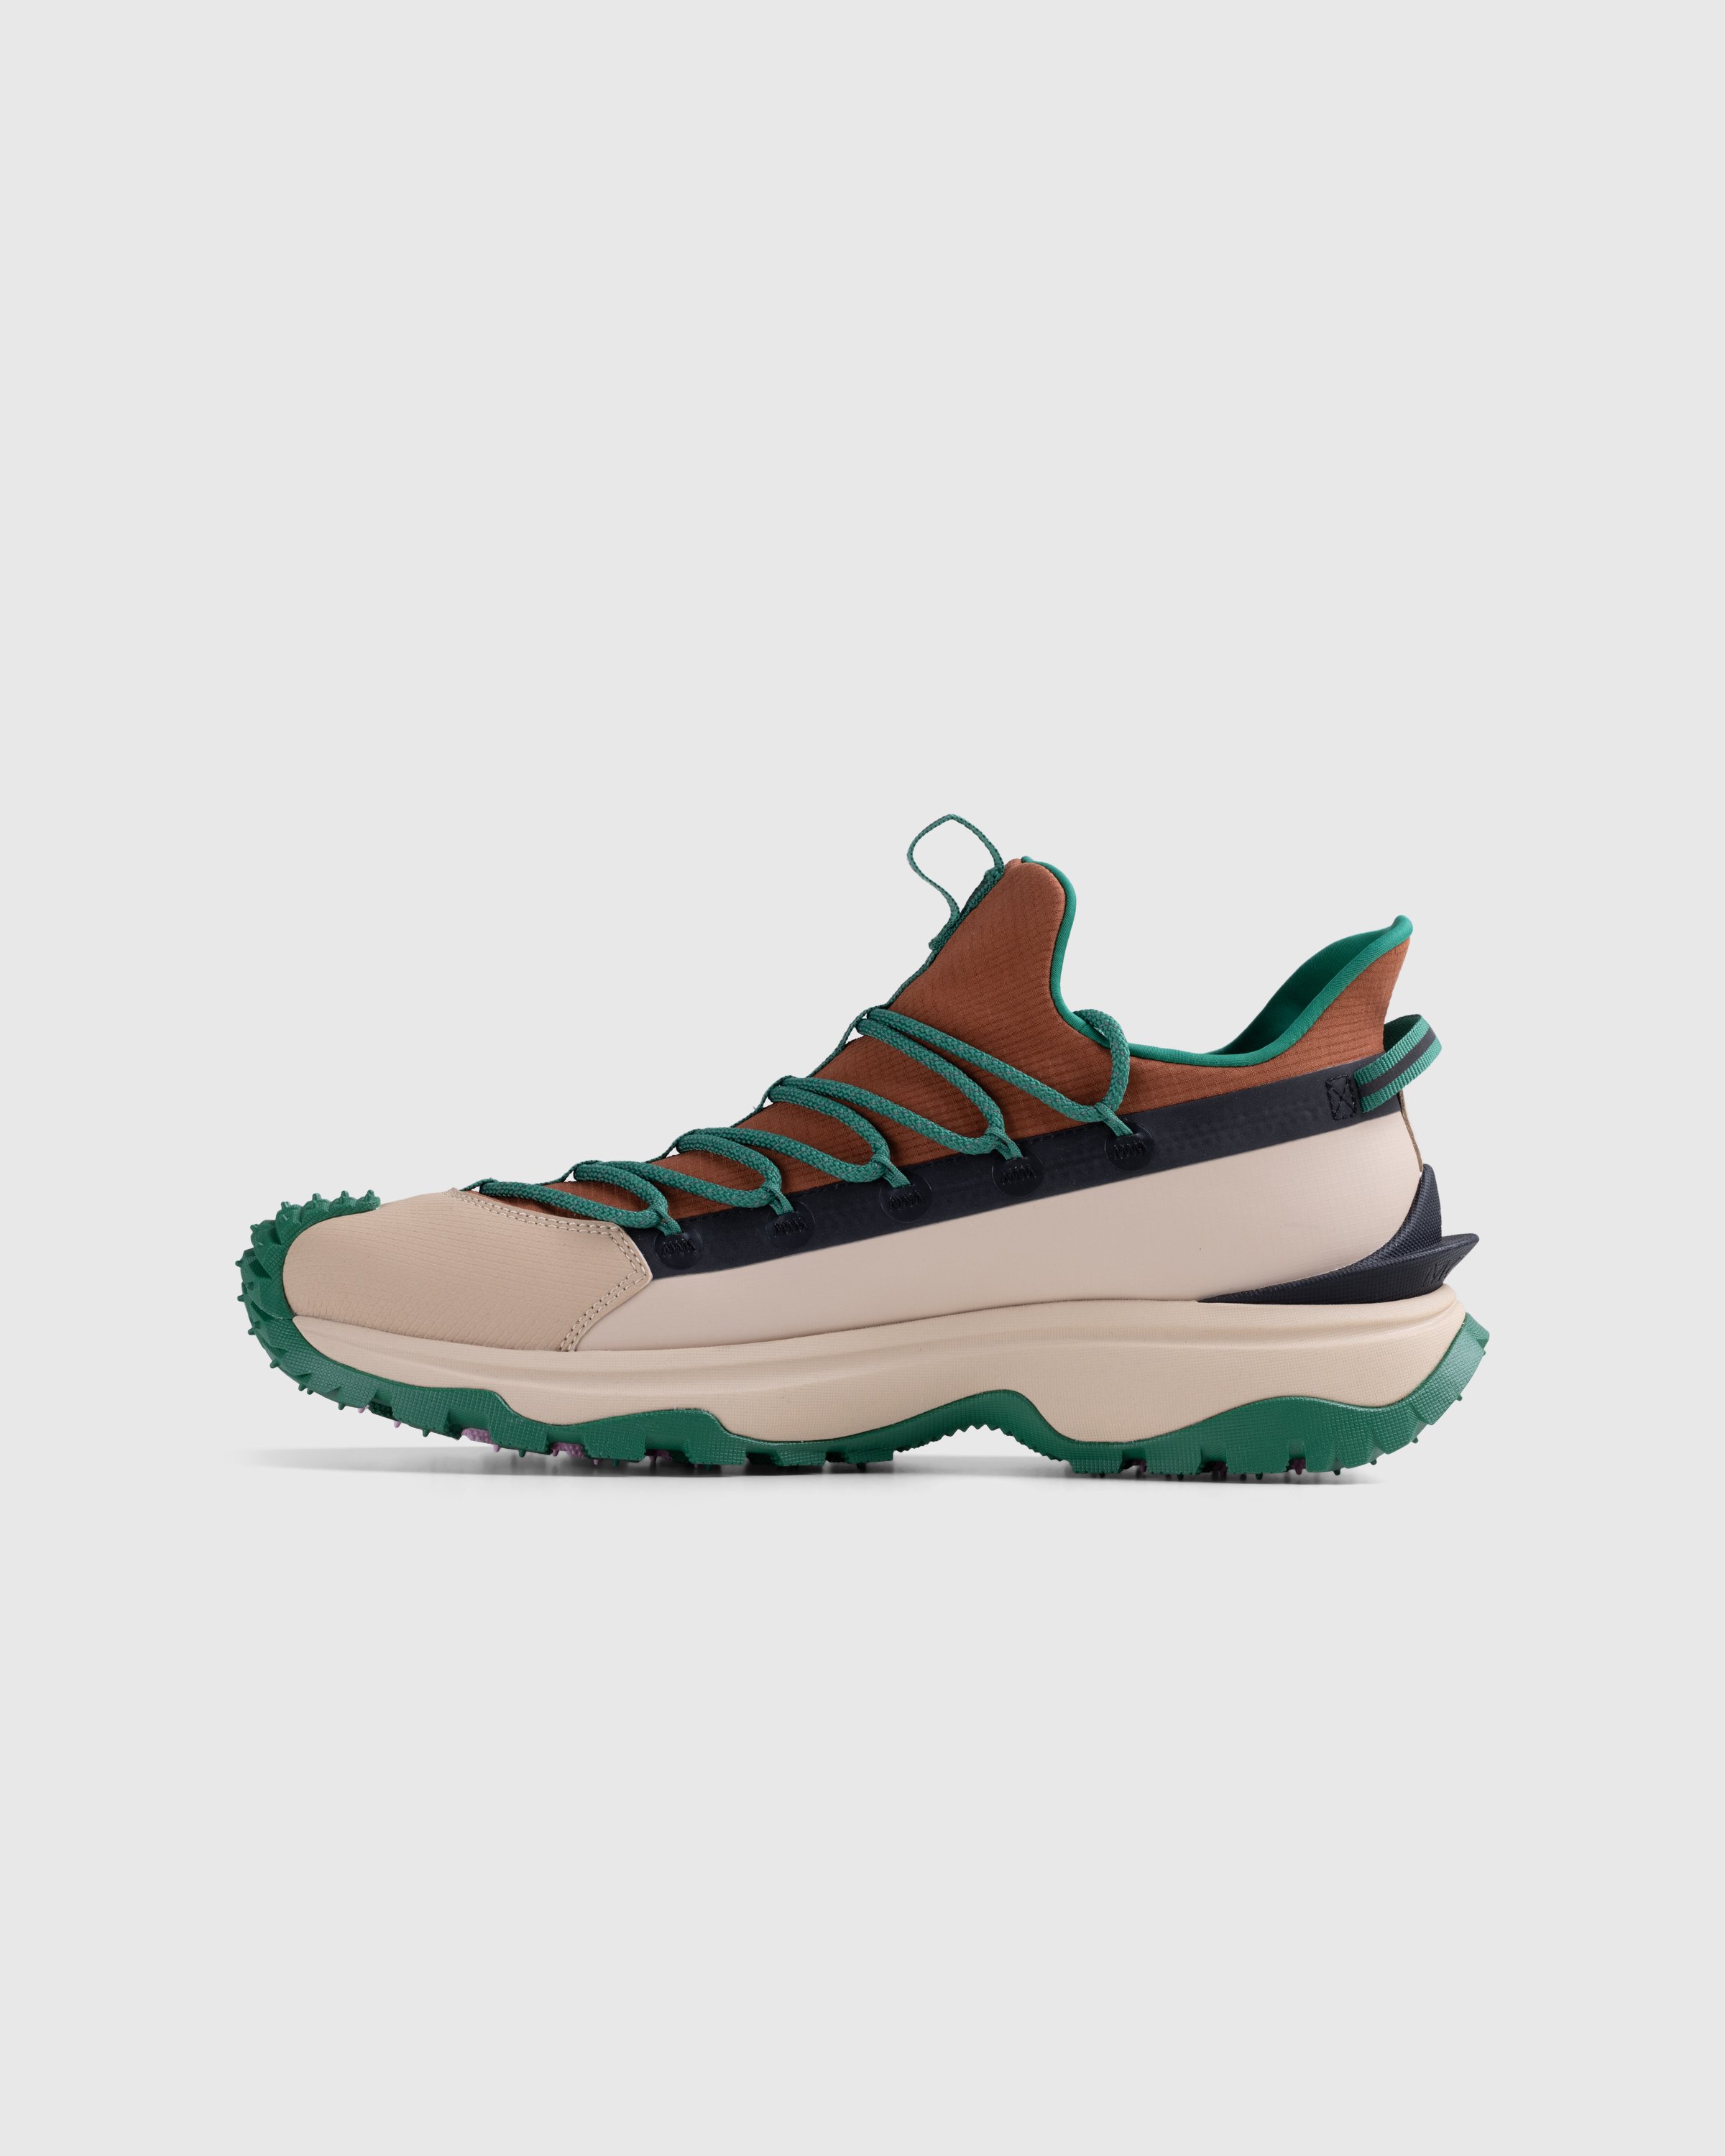 Moncler - Trailgrip Lite 2 Sneakers Brown/Green - Footwear - Orange - Image 2